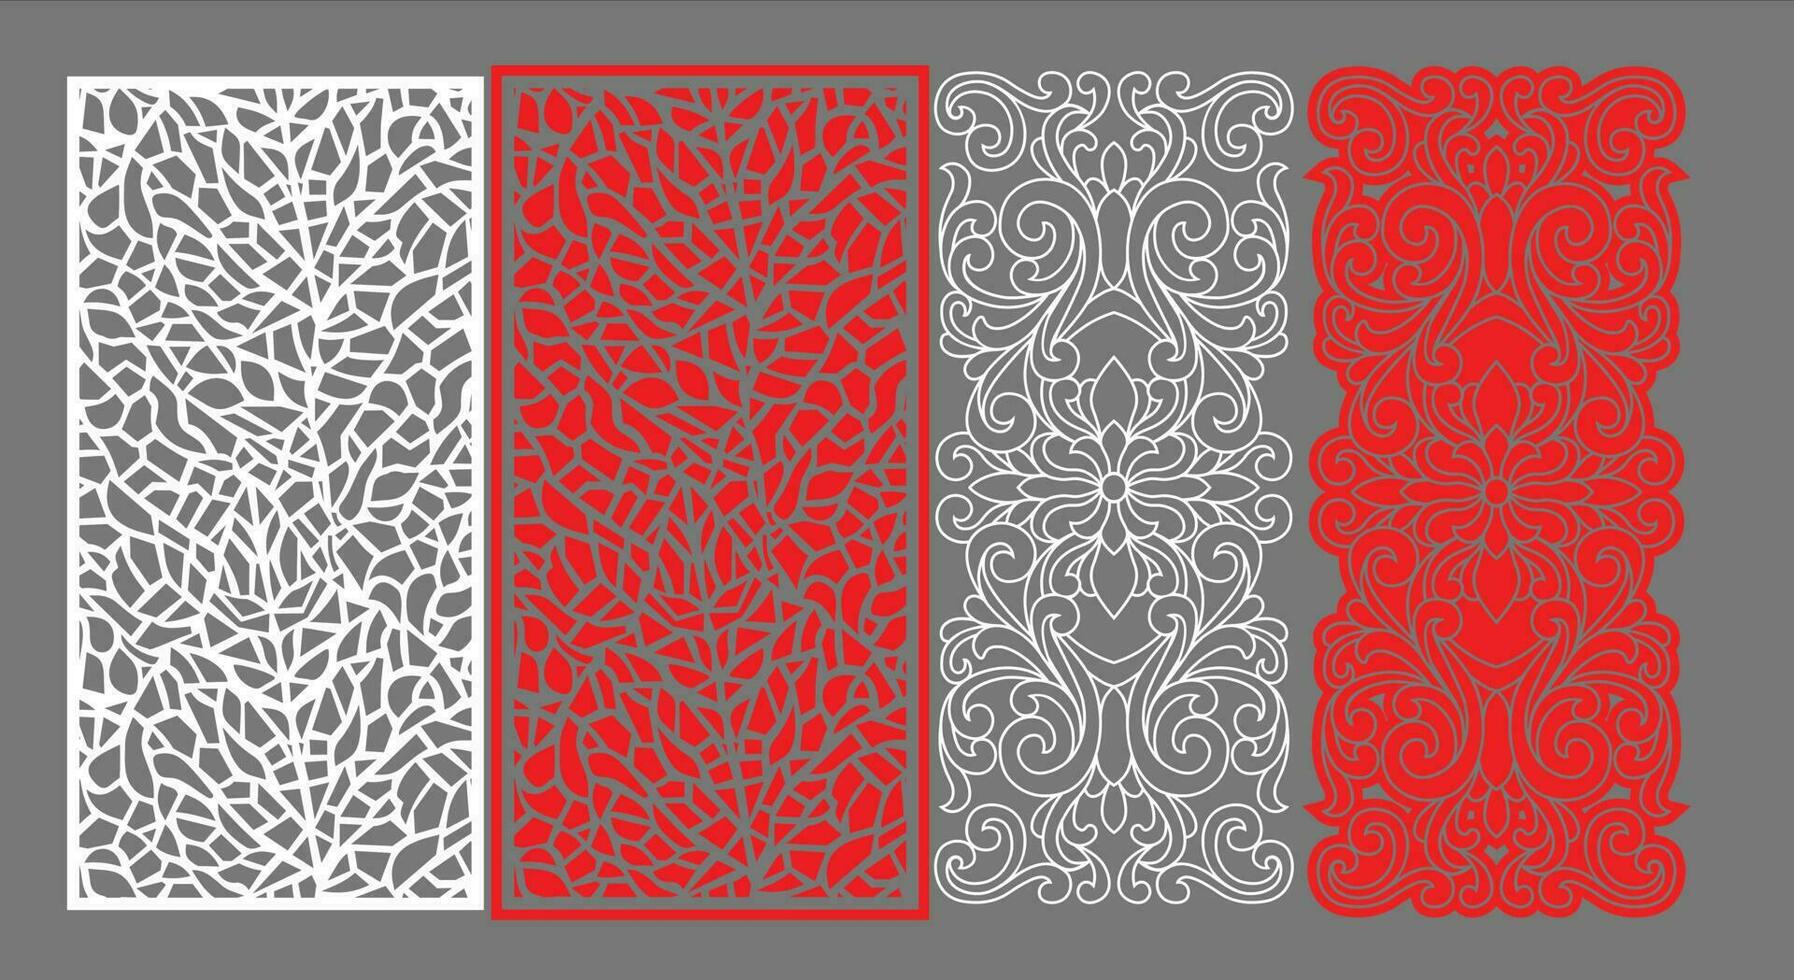 dekorativ vägg paneler uppsättning Jali design cnc mönster, laser skärande mönster, router cnccutting.jali laser skära dekorativ panel uppsättning med spets mönster. vektor